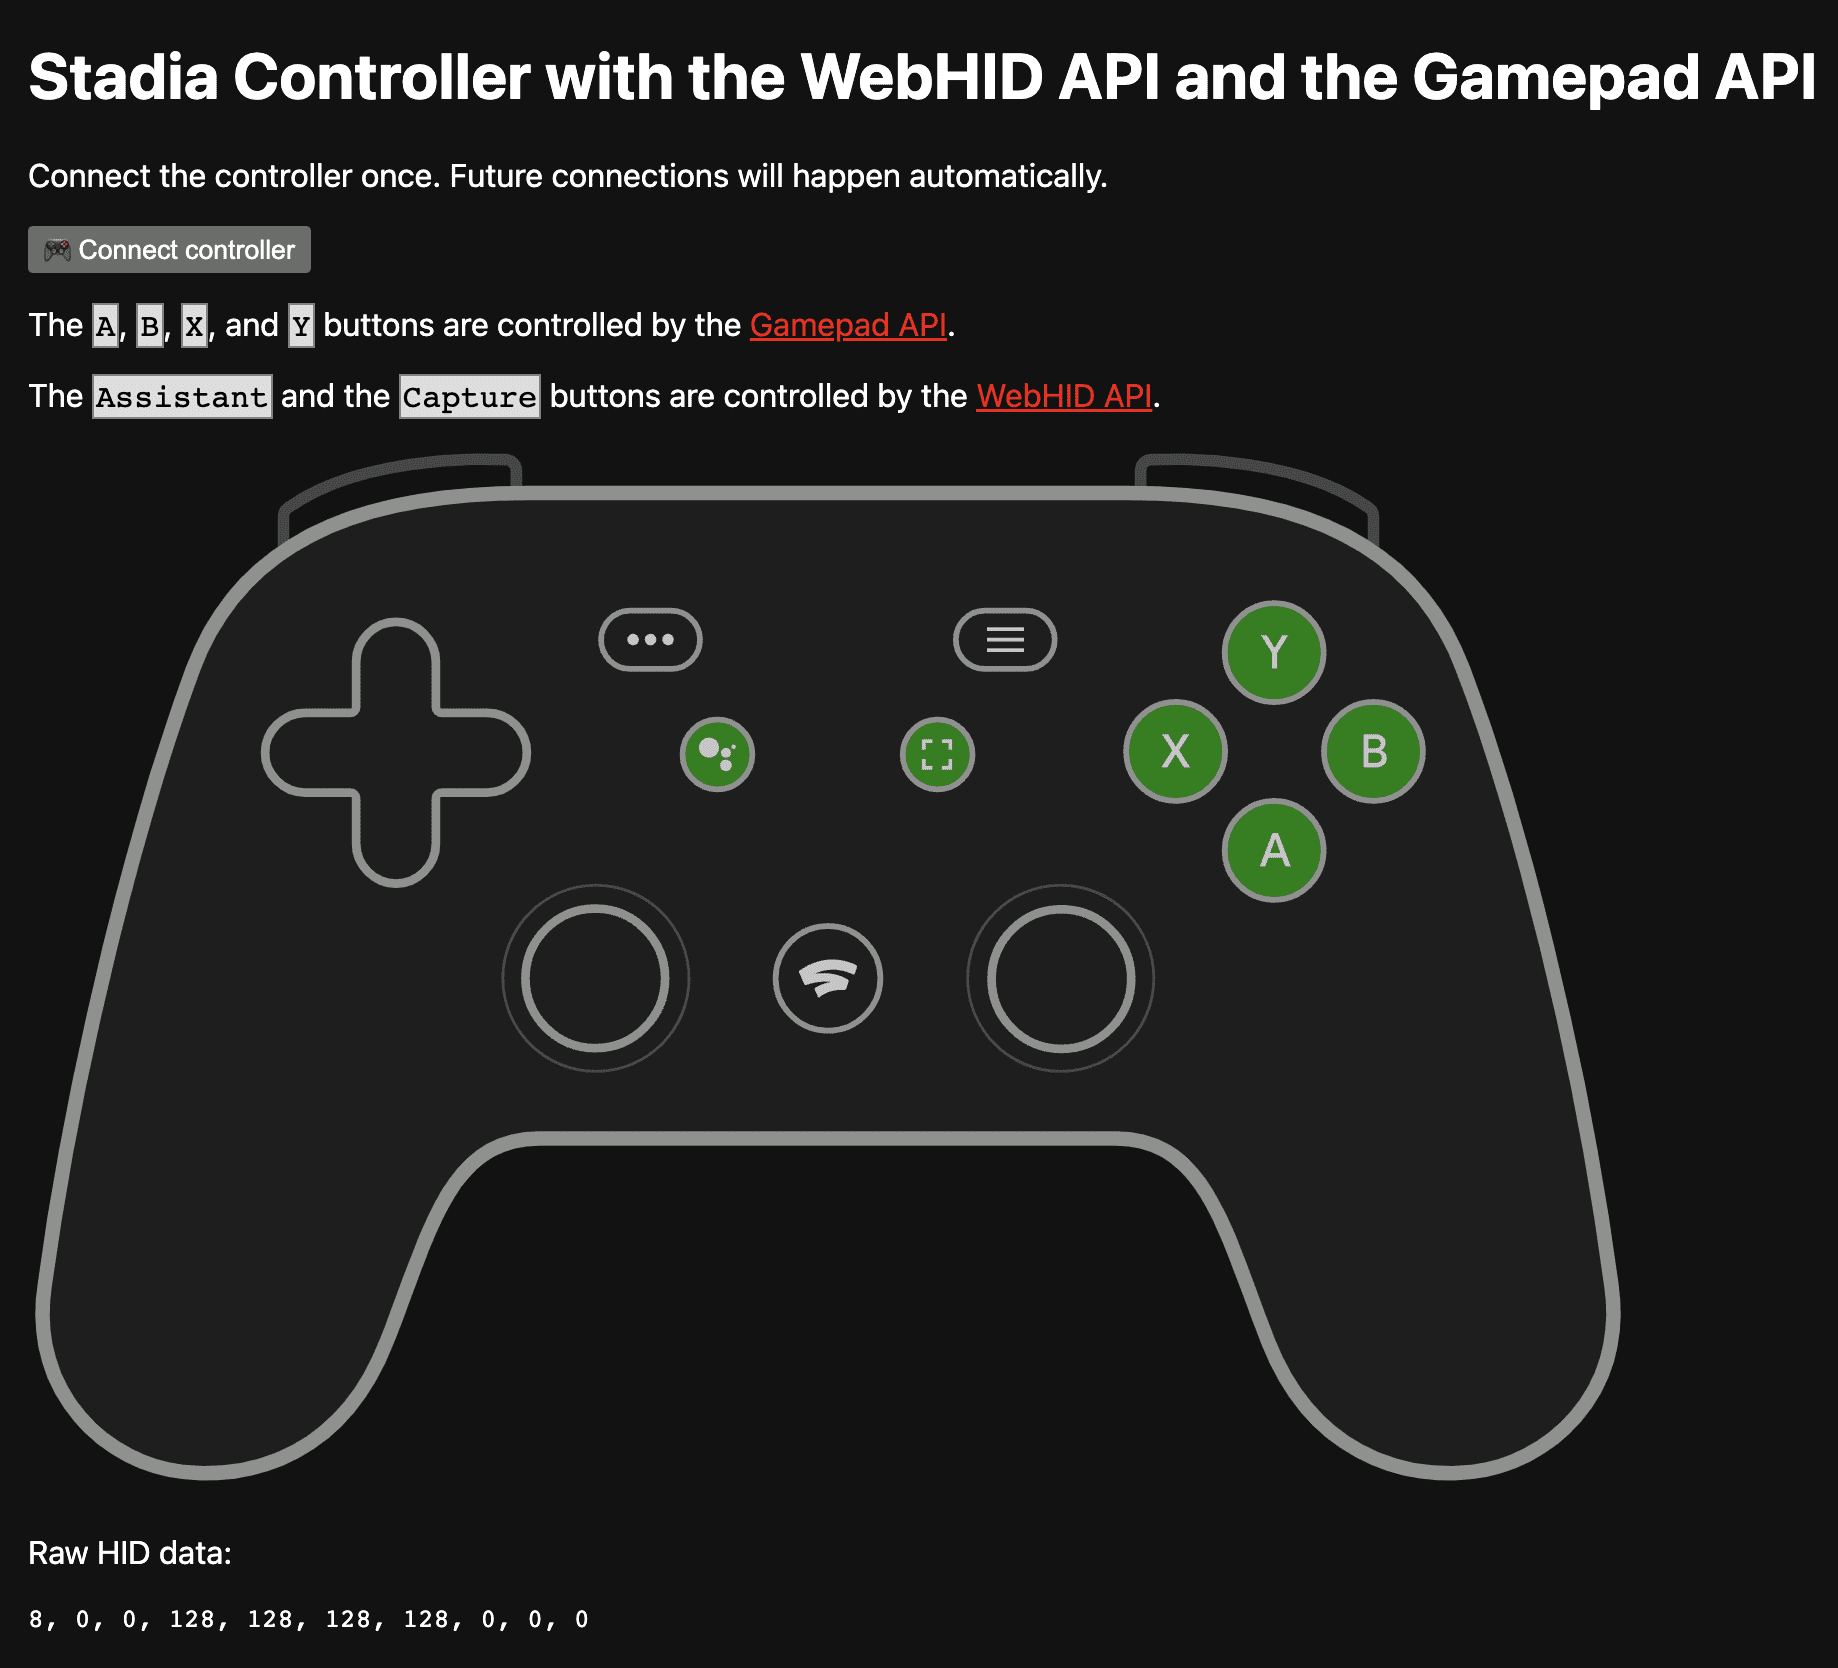 אפליקציית ההדגמה בכתובת https://stadia-controller-webhid-gamepad.glitch.me/ שבה מוצגים הלחצנים A, B, X ו-Y שנשלטים על ידי Gamepad API, ולחצני Assistant והצילום שנשלטים על ידי WebHID API.